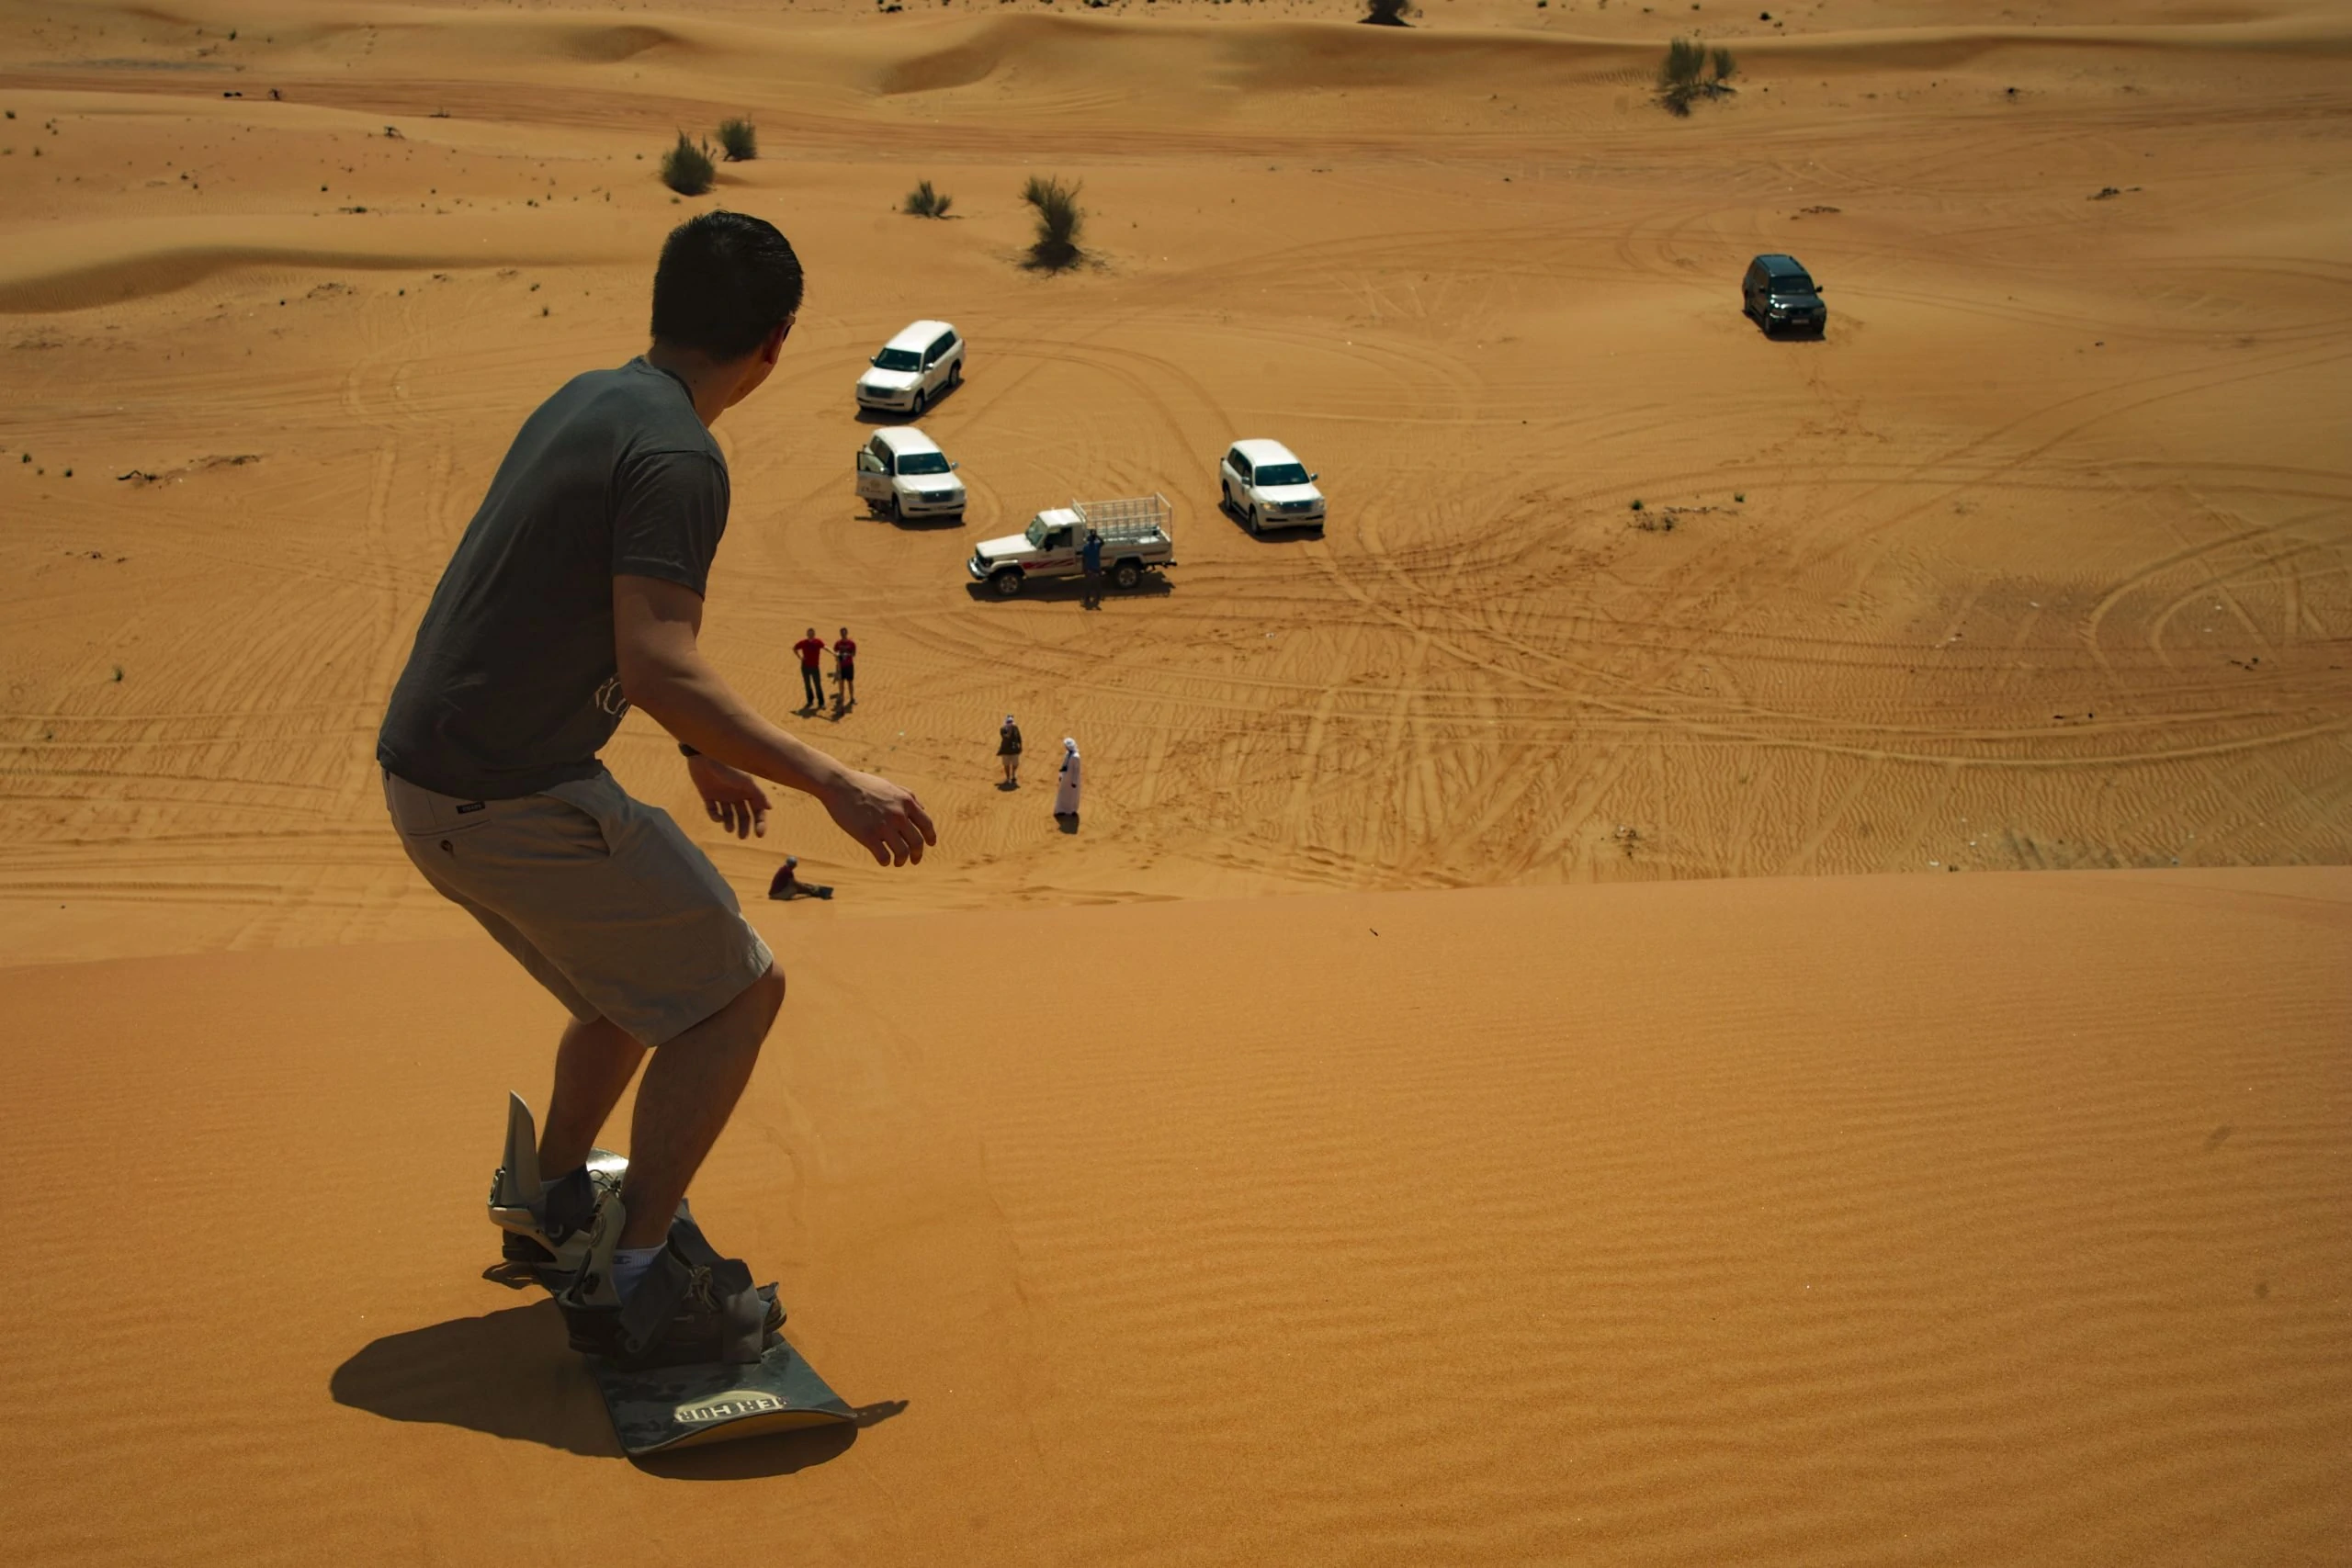 Hacer surf en la arena en el desierto de Dubái